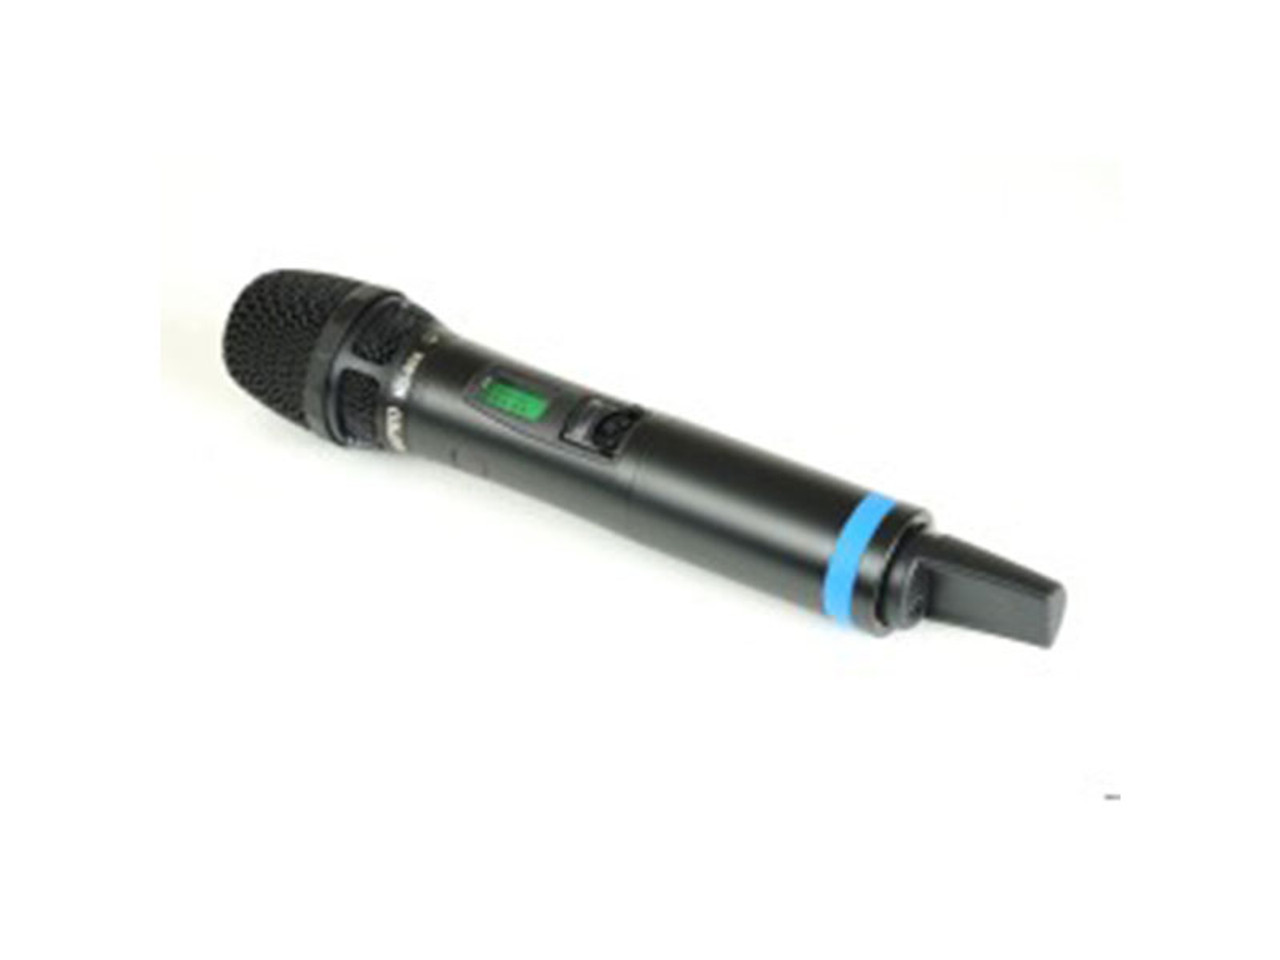 Avlex ACT-700H UHF Handheld Microphone